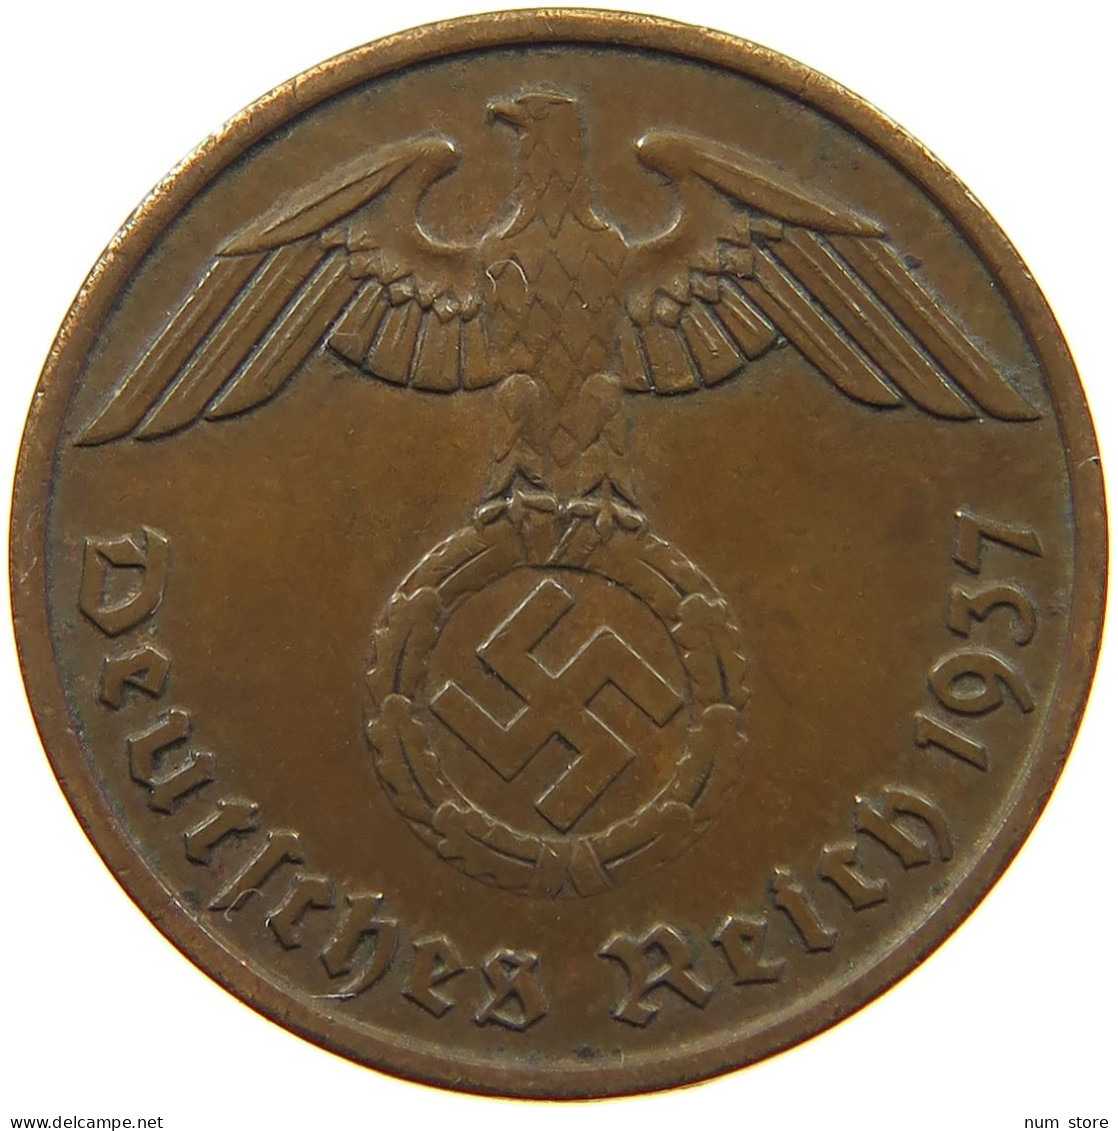 GERMANY 2 PFENNIG 1937 A #a032 0373 - 2 Reichspfennig